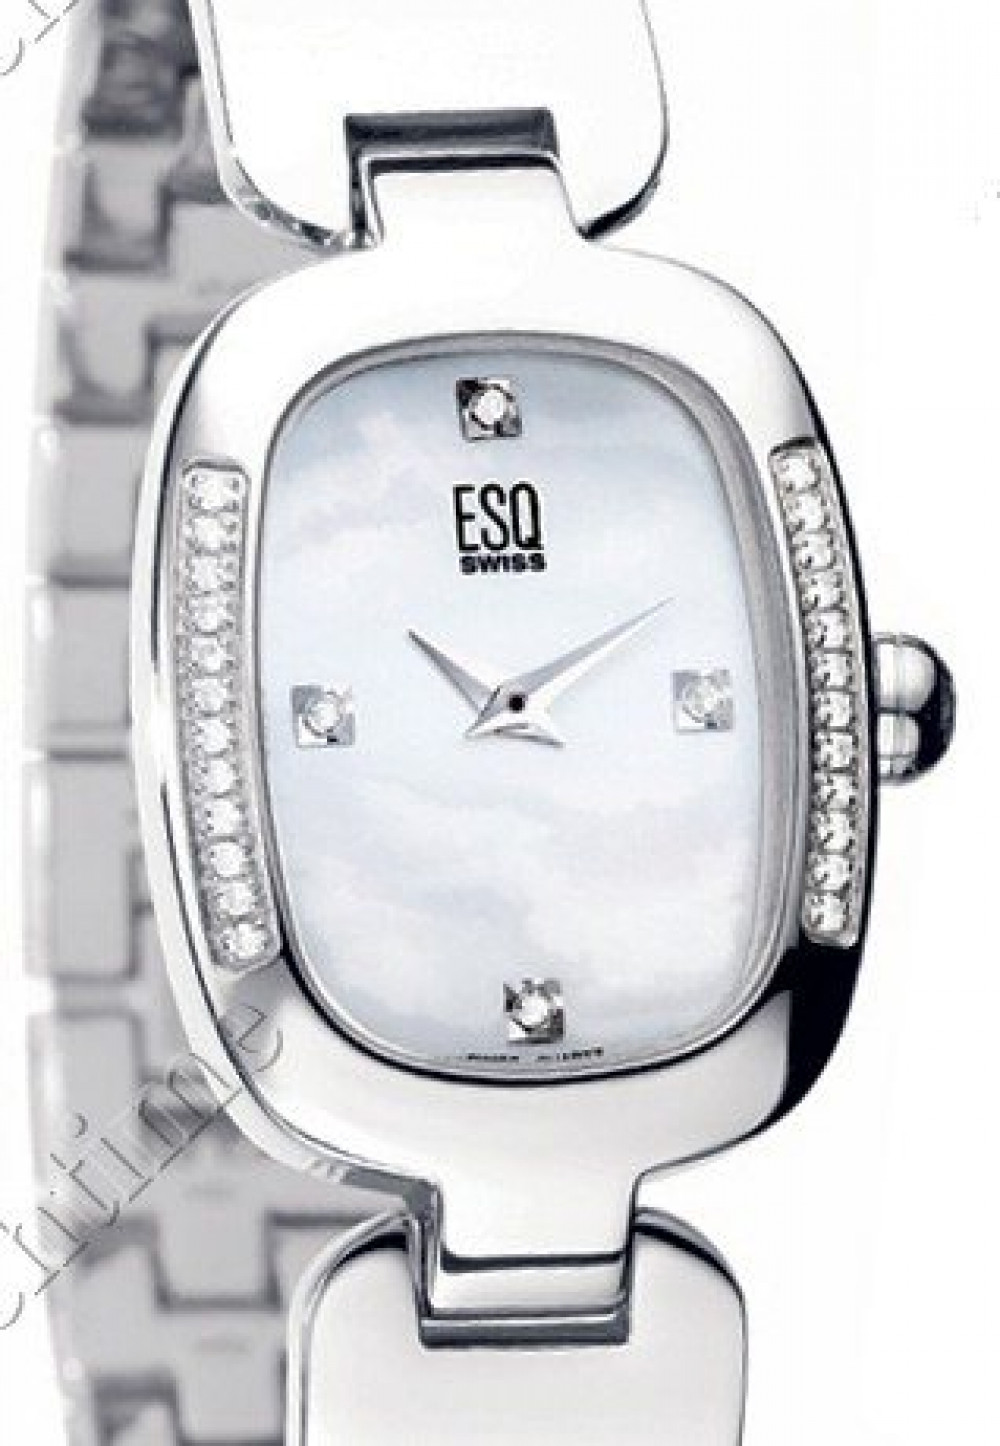 Zegarek firmy ESQ Swiss, model Love Knot